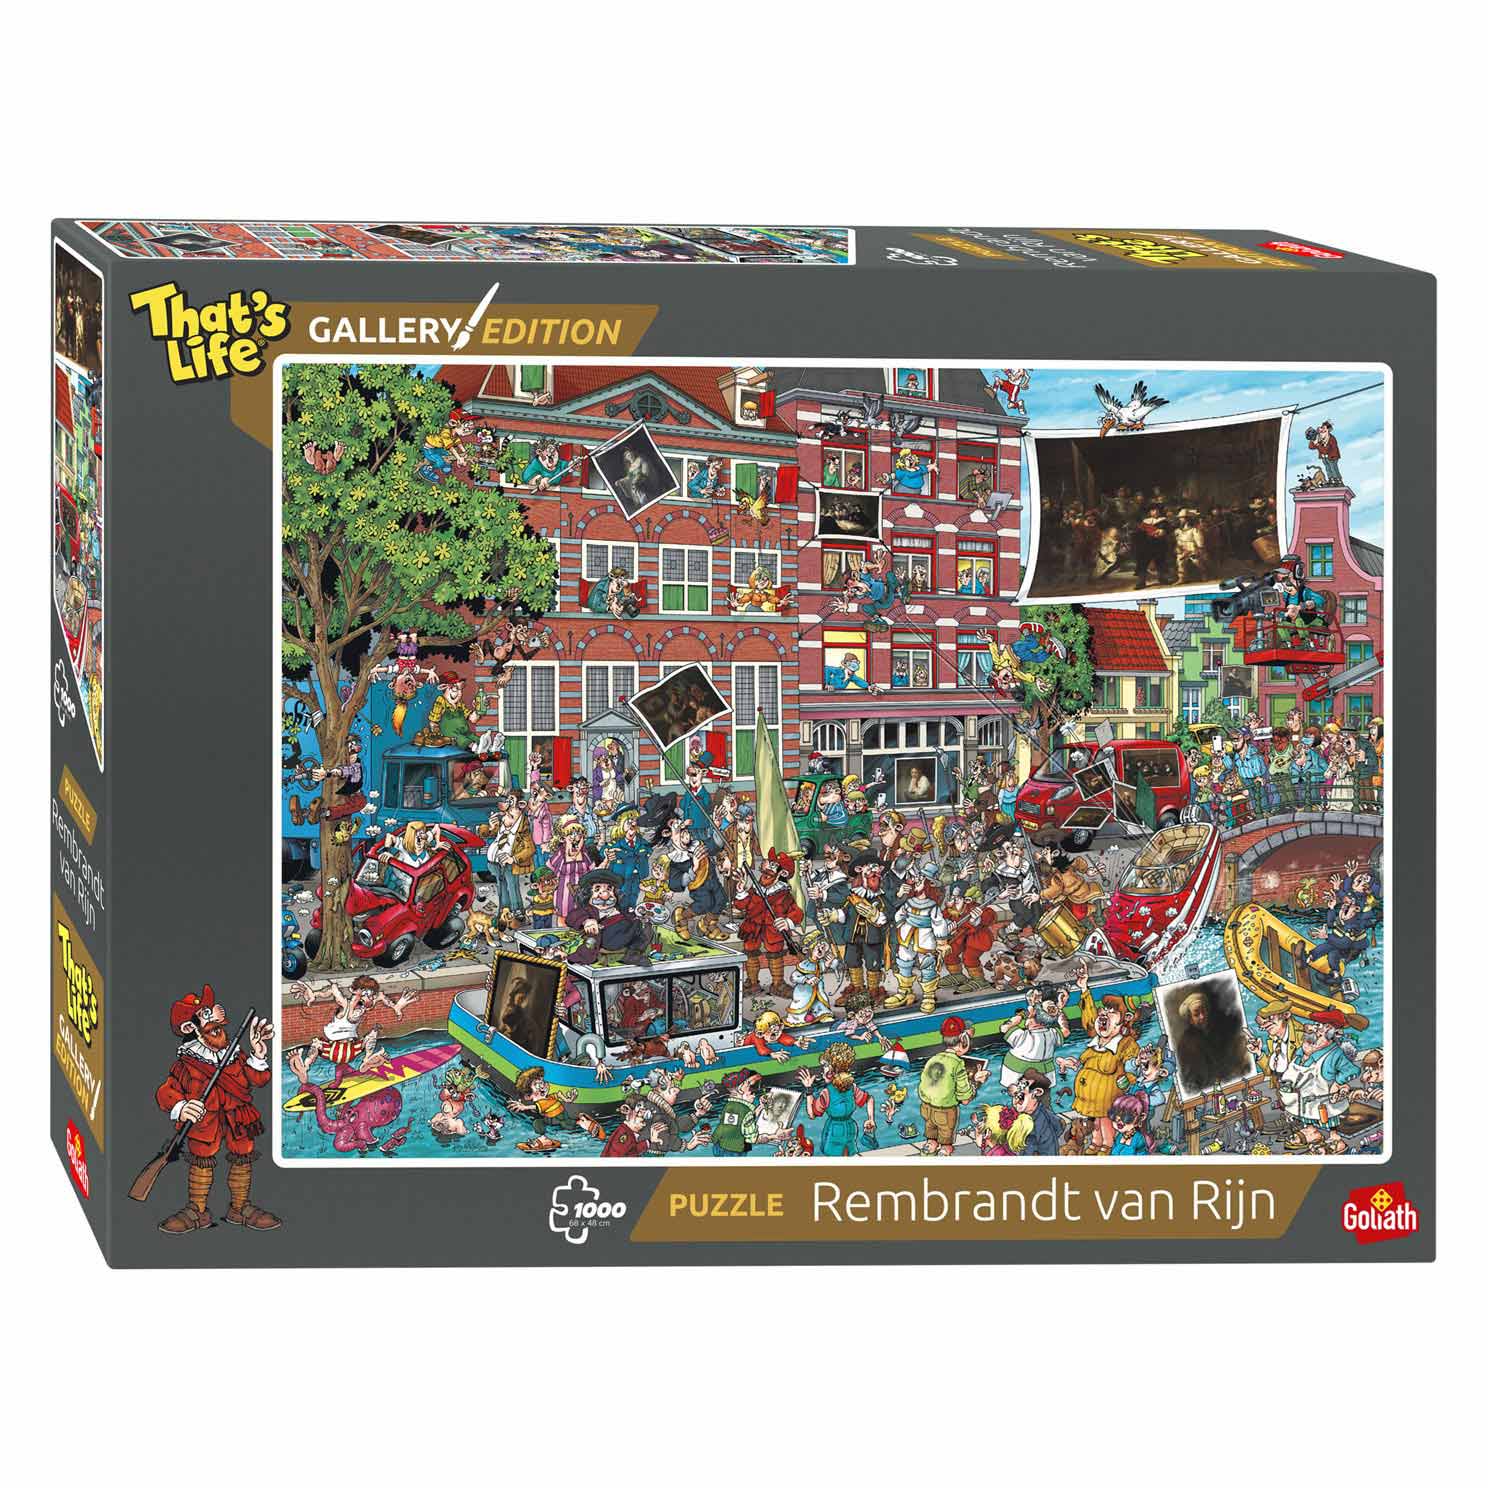 Kameraad Vet Moedig aan That's Life Gallery Edition: Rembrandt van Rijn Jigsaw Puzzle, 1000pcs. |  Thimble Toys